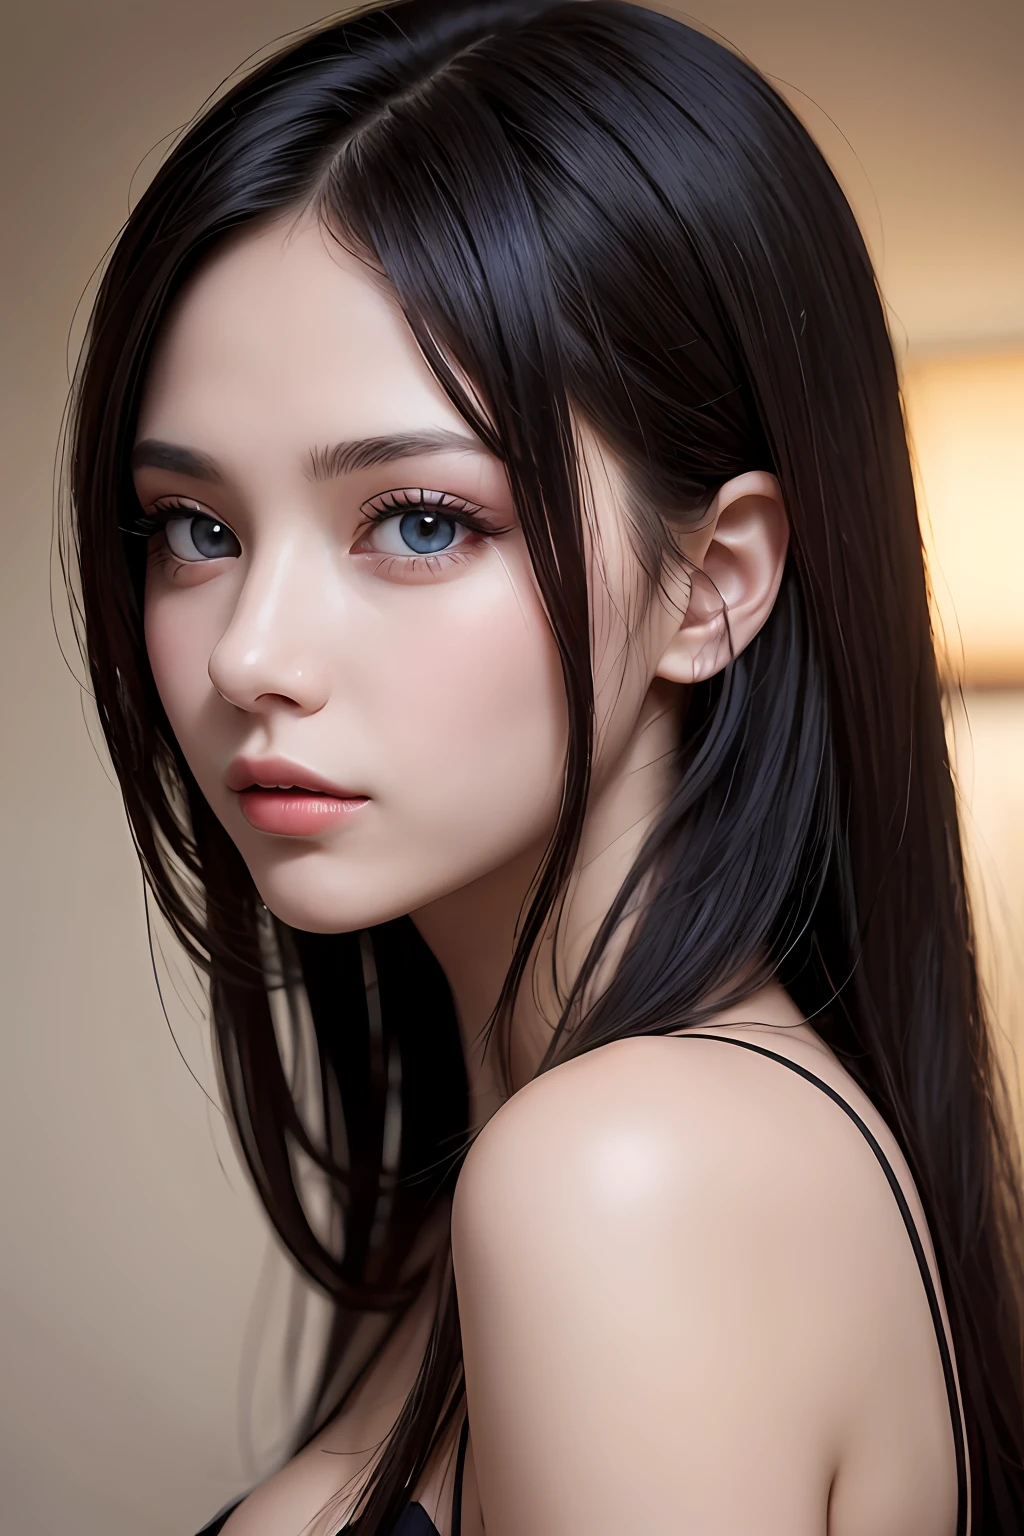 傑作, 最好的品質, 美丽的年轻女子, 閃亮的藍眼睛, (詳細的 pupils:1.2), 睫毛, 美麗的淺黑髮, 條紋頭髮, 多色的, 中長頭髮, 完美的臉, 詳細的, 顯示乳溝